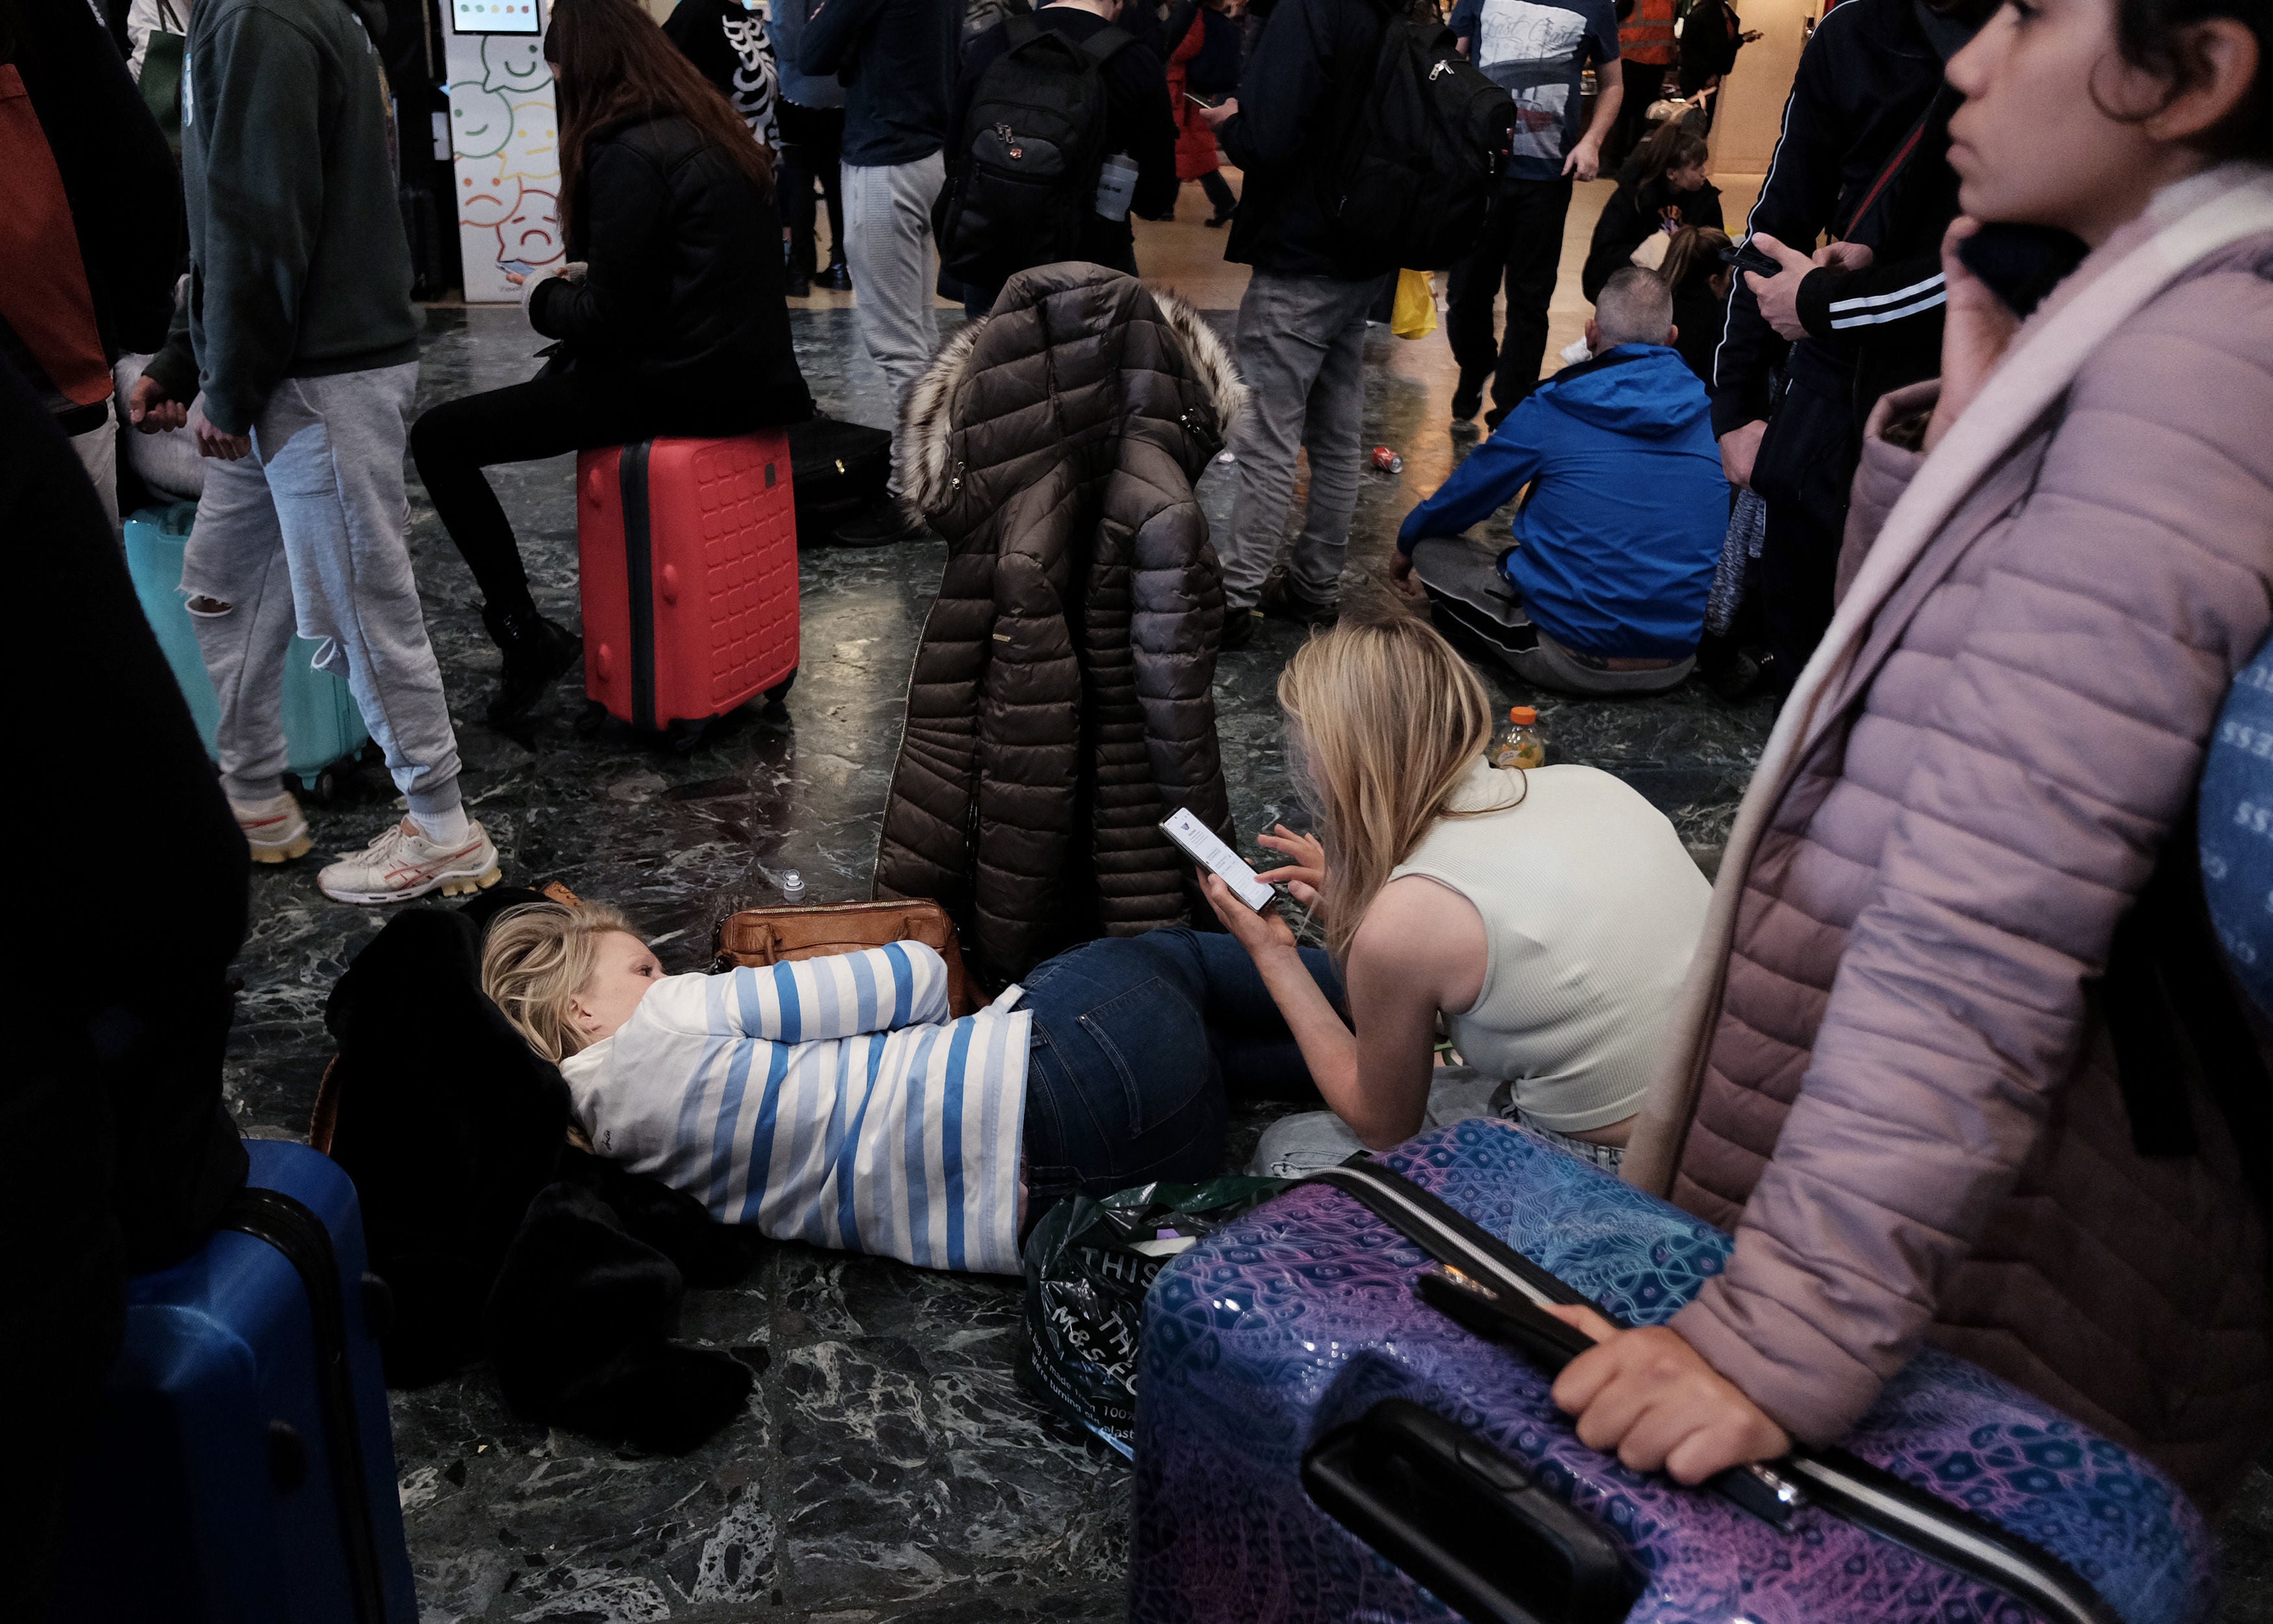 Passengers attempt to sleep on the floor at London Euston